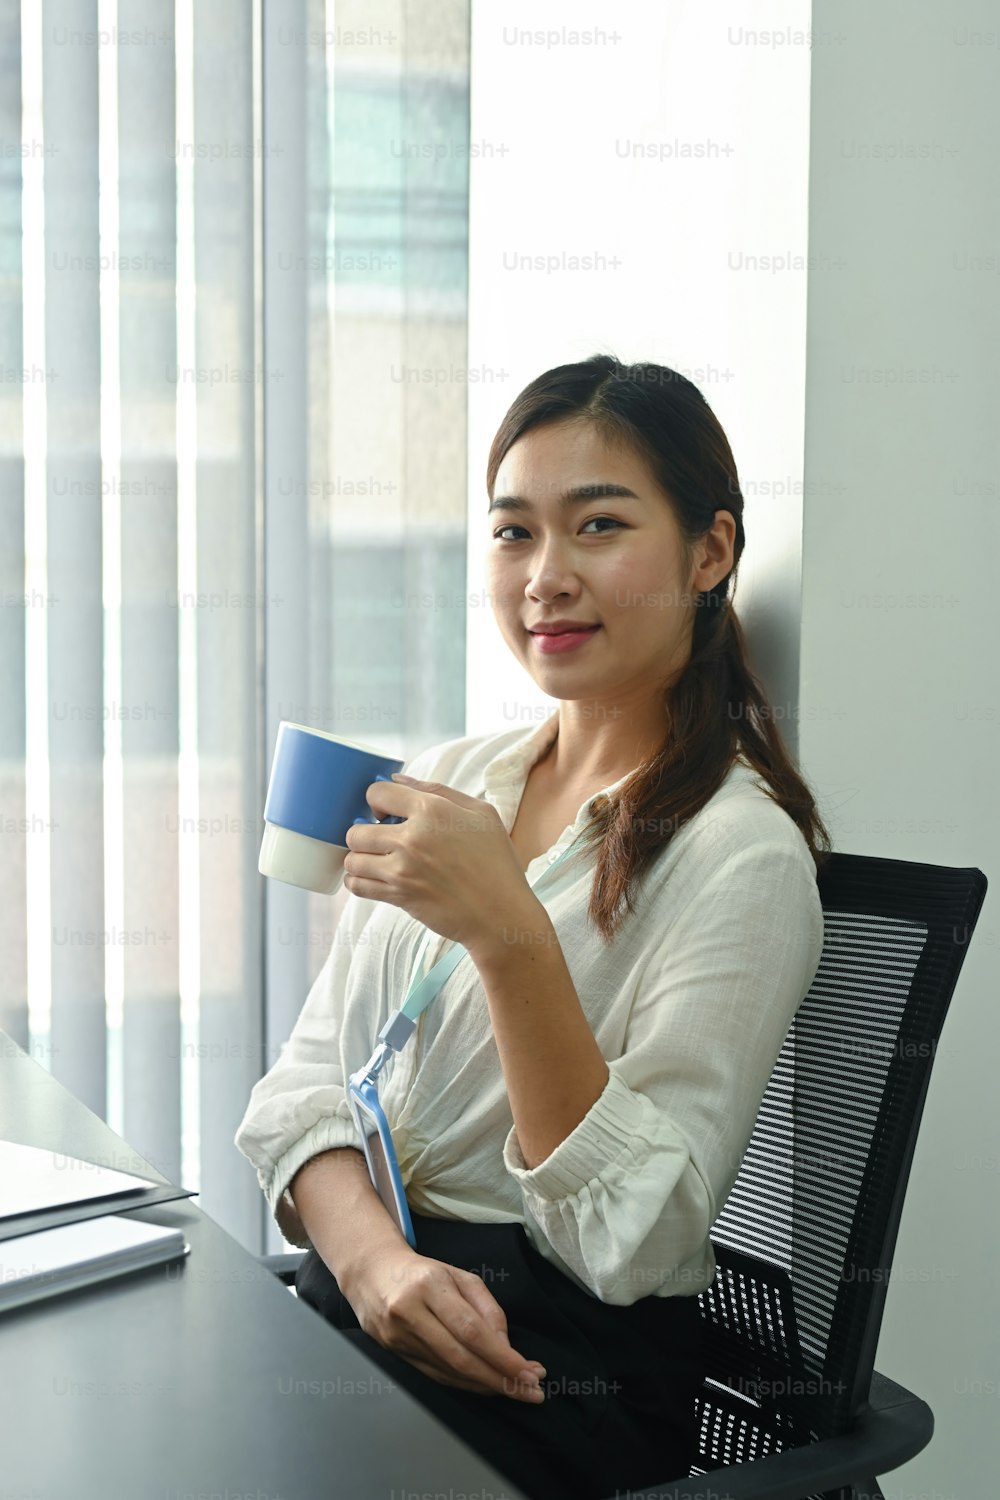 Retrato de una oficinista sosteniendo una taza de café y sonriendo a la cámara.